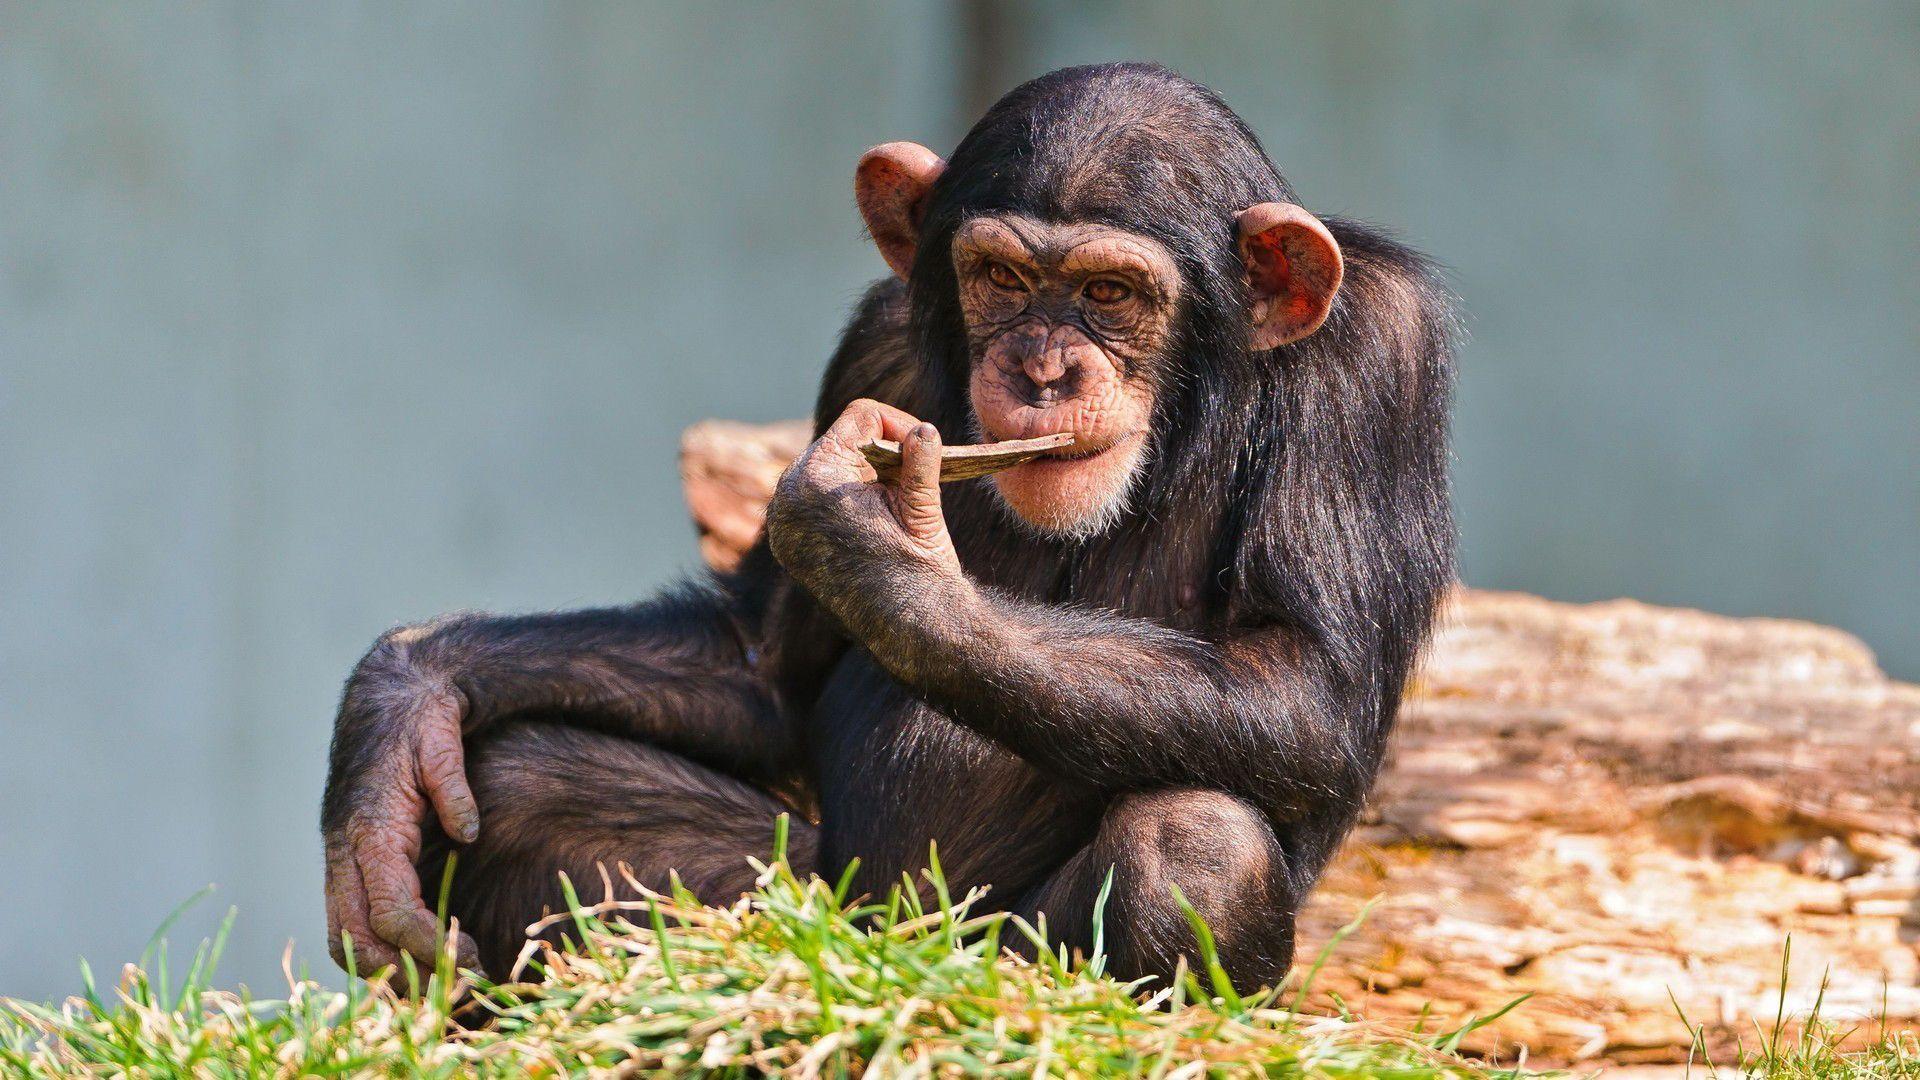 chimpanzee photo Wallpaper